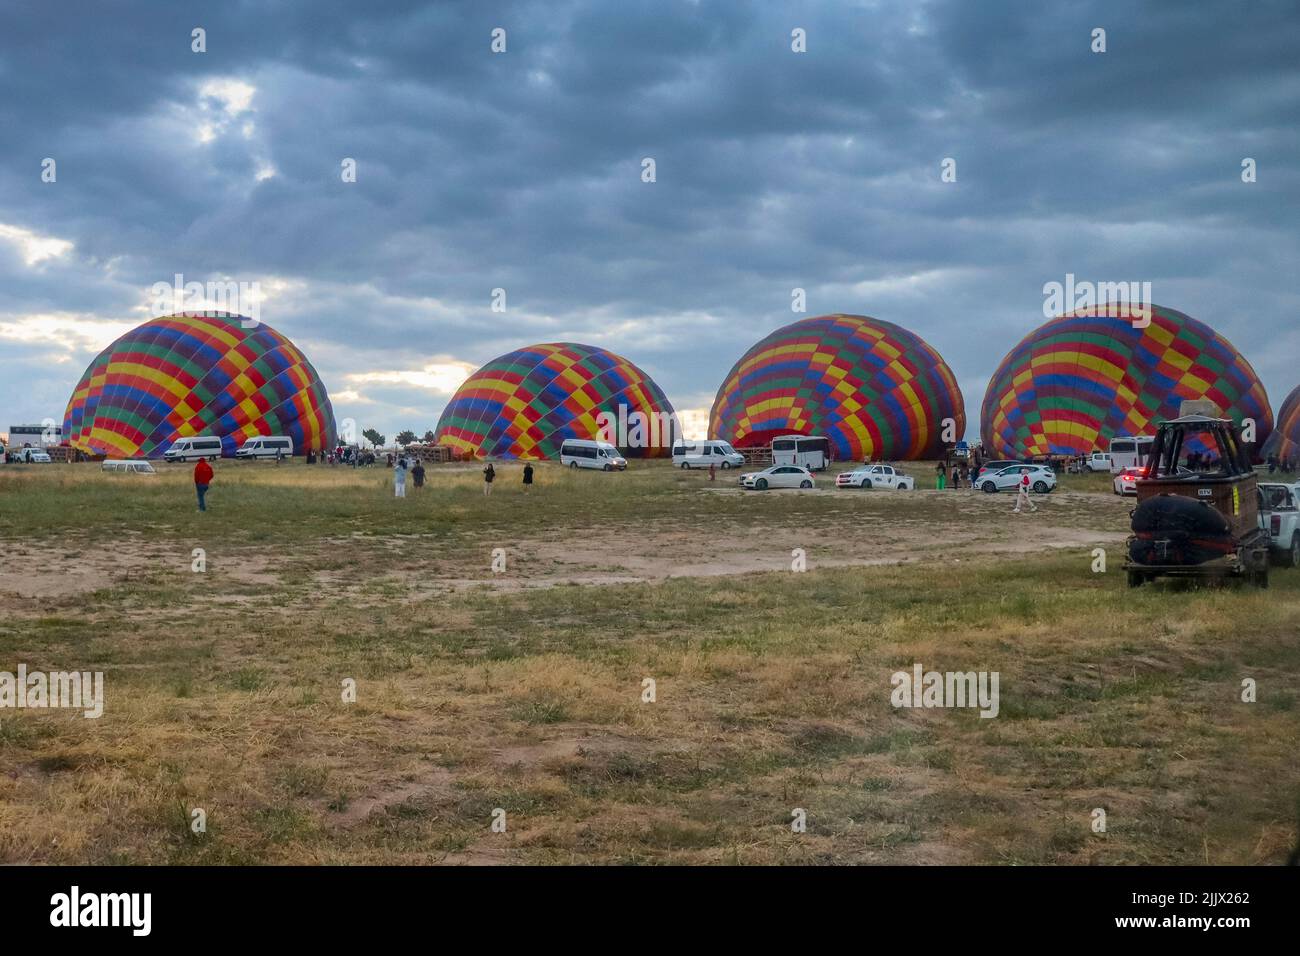 GÖREME/TURQUIE - 27 juin 2022 : des ballons de la même couleur sont gonflés pour le vol. Banque D'Images